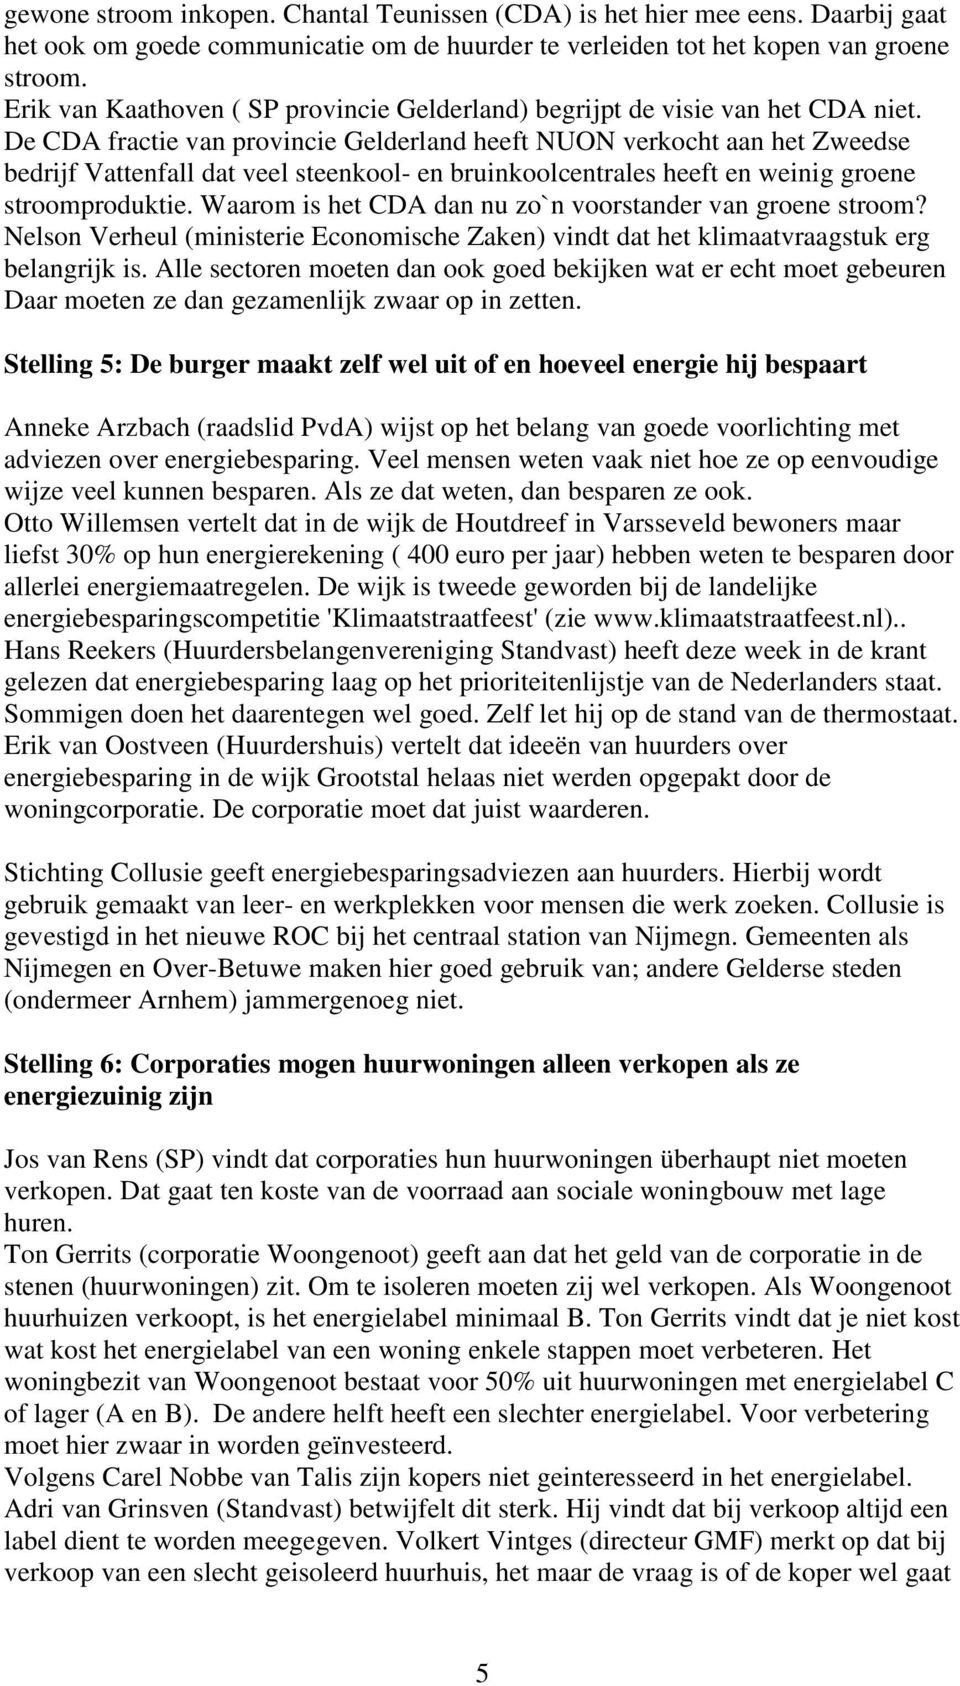 De CDA fractie van provincie Gelderland heeft NUON verkocht aan het Zweedse bedrijf Vattenfall dat veel steenkool- en bruinkoolcentrales heeft en weinig groene stroomproduktie.